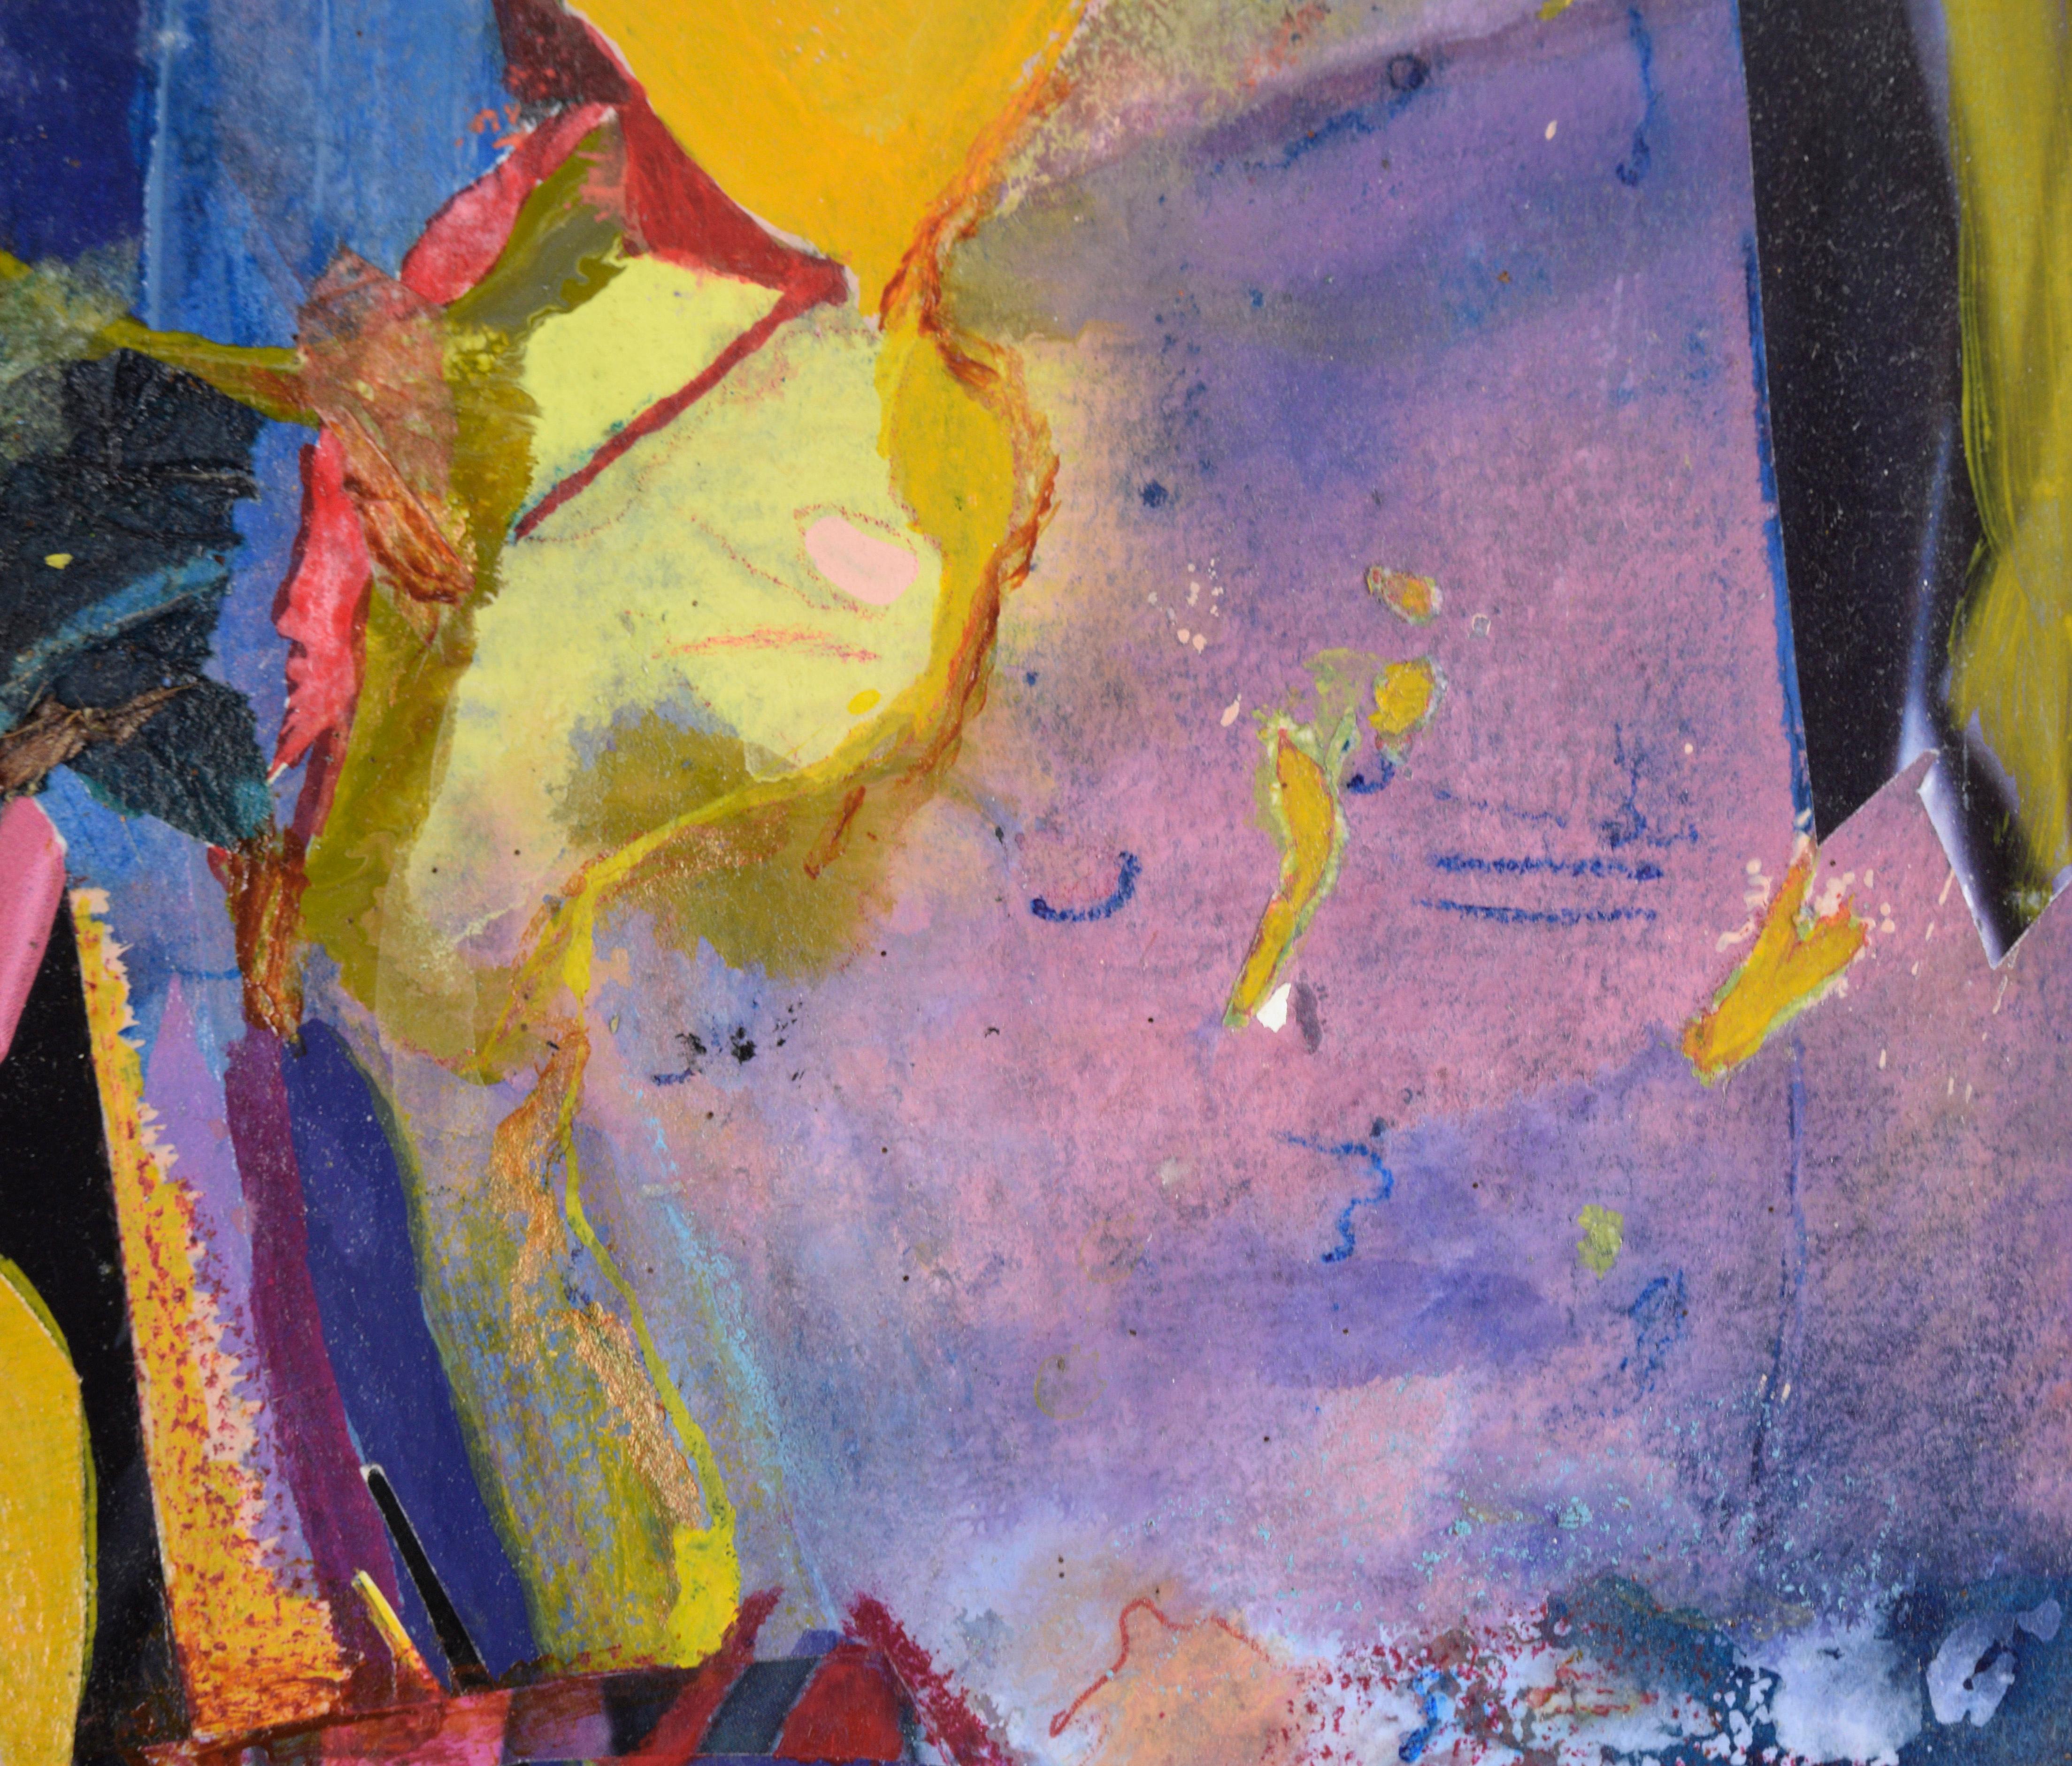 Abstrait de carnaval en bleu, magenta et jaune - Huile et collage sur papier

Abstrait vif et coloré de Jennie T. Rafton (Américaine, née en 1925). Les formes sont dispersées sur la page, ce qui implique le mouvement et la circulation. Les découpes